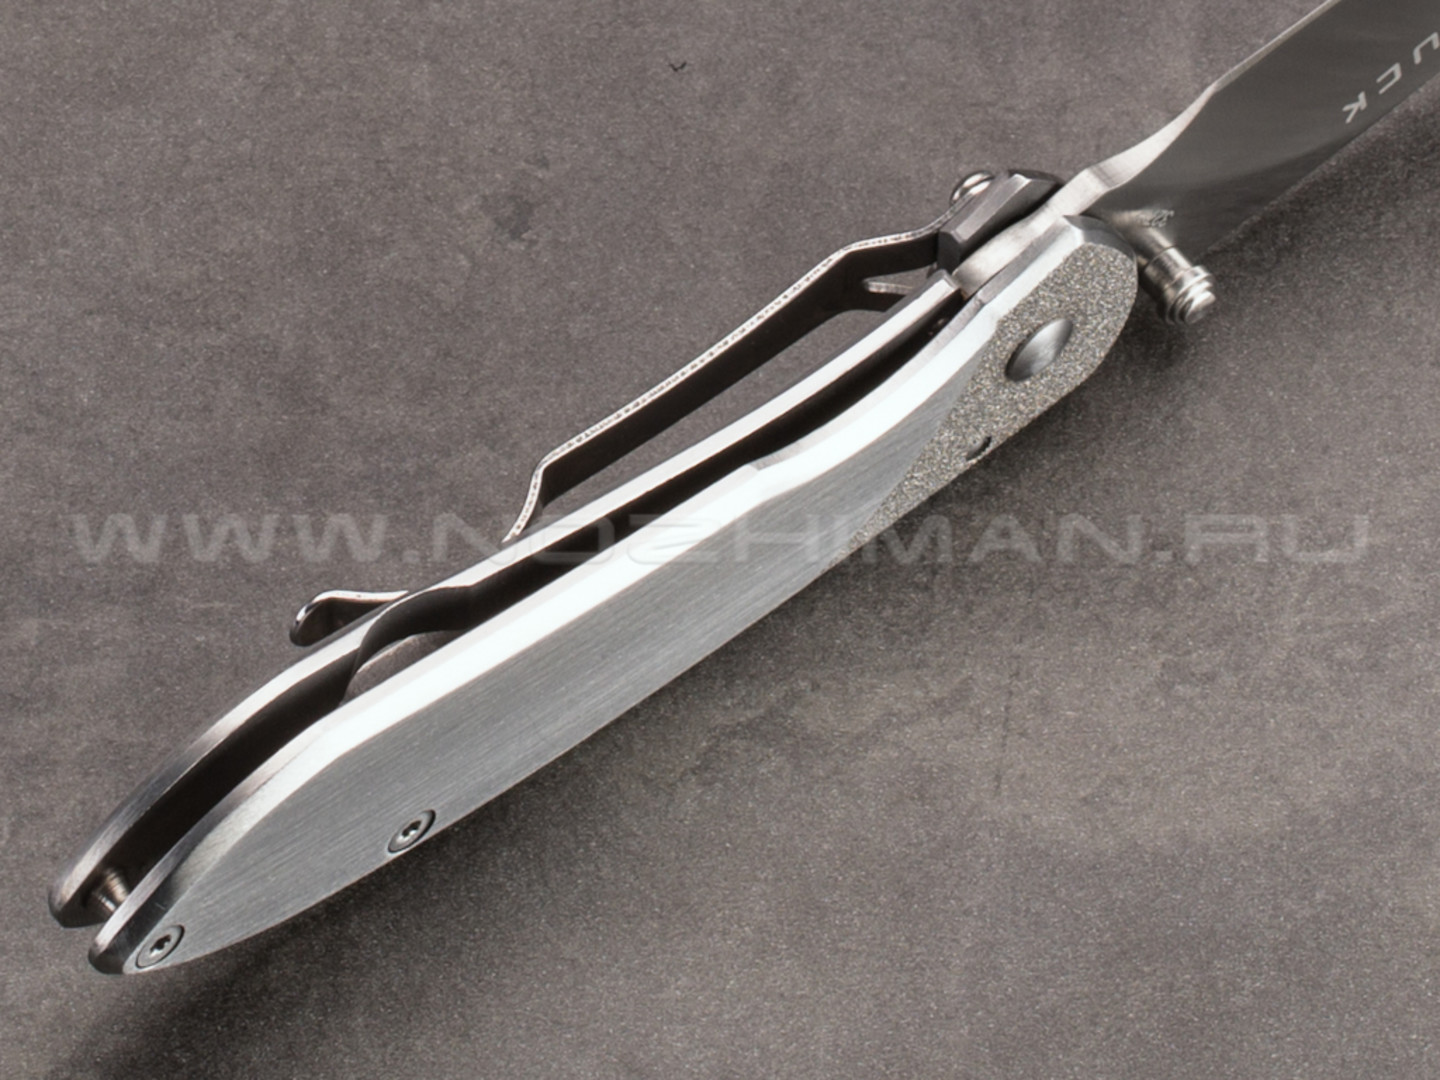 Нож Buck 327 Nobleman 0327SSS сталь 420HC рукоять Stainless steel